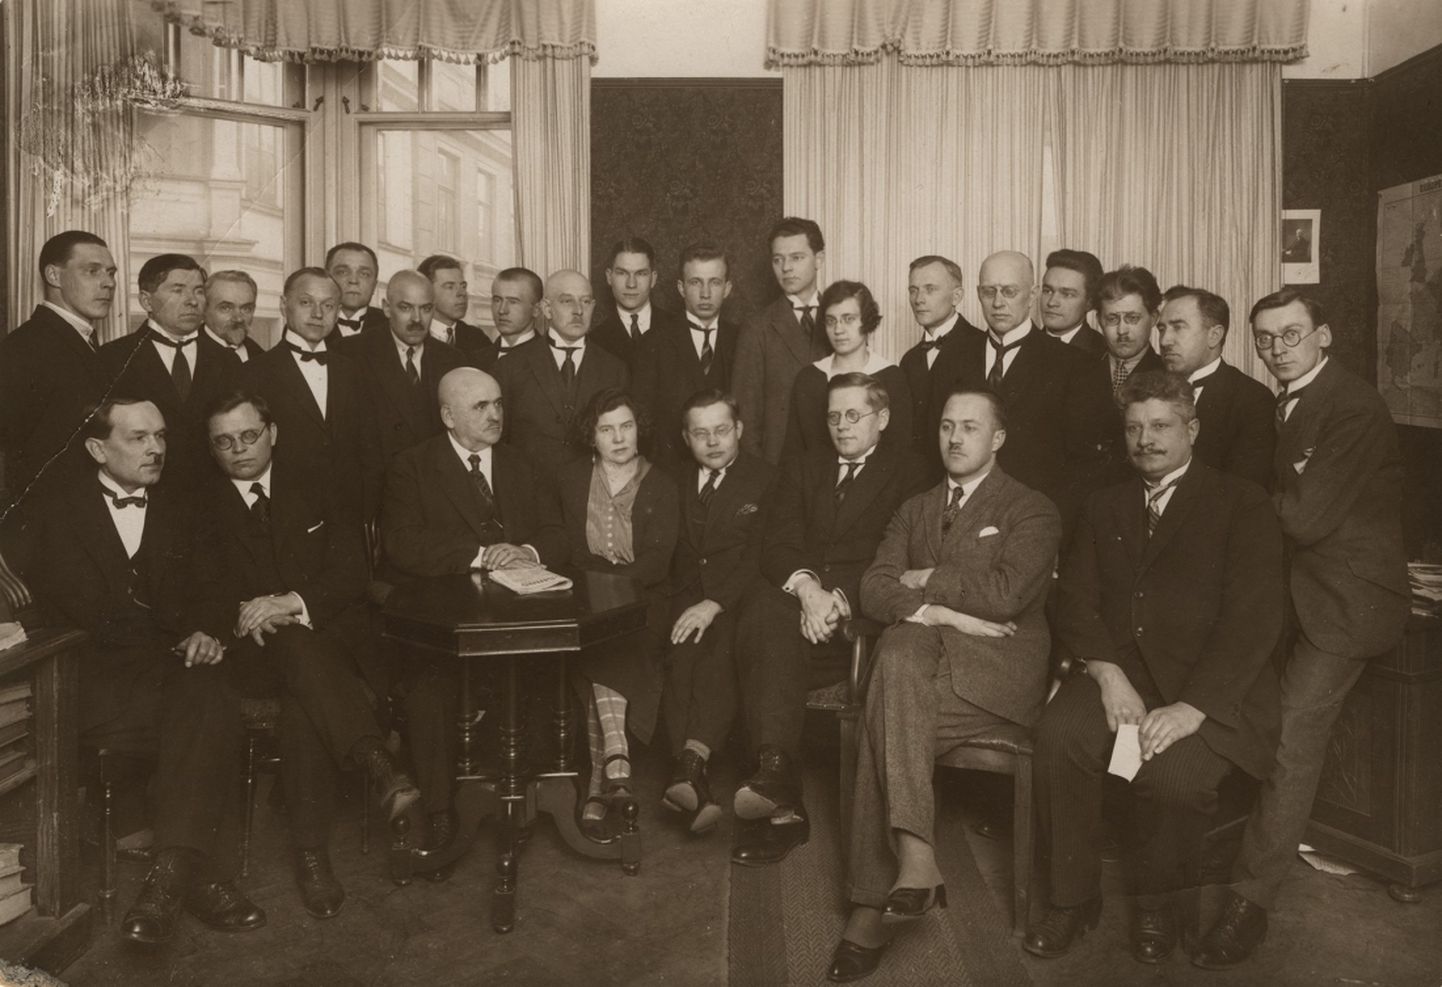 Laikraksta "Jaunākās Ziņas" redakcijas darbinieki ap 1925. gadu. Kārlis Skalbe – pirmajā rindā, otrais no kreisās.